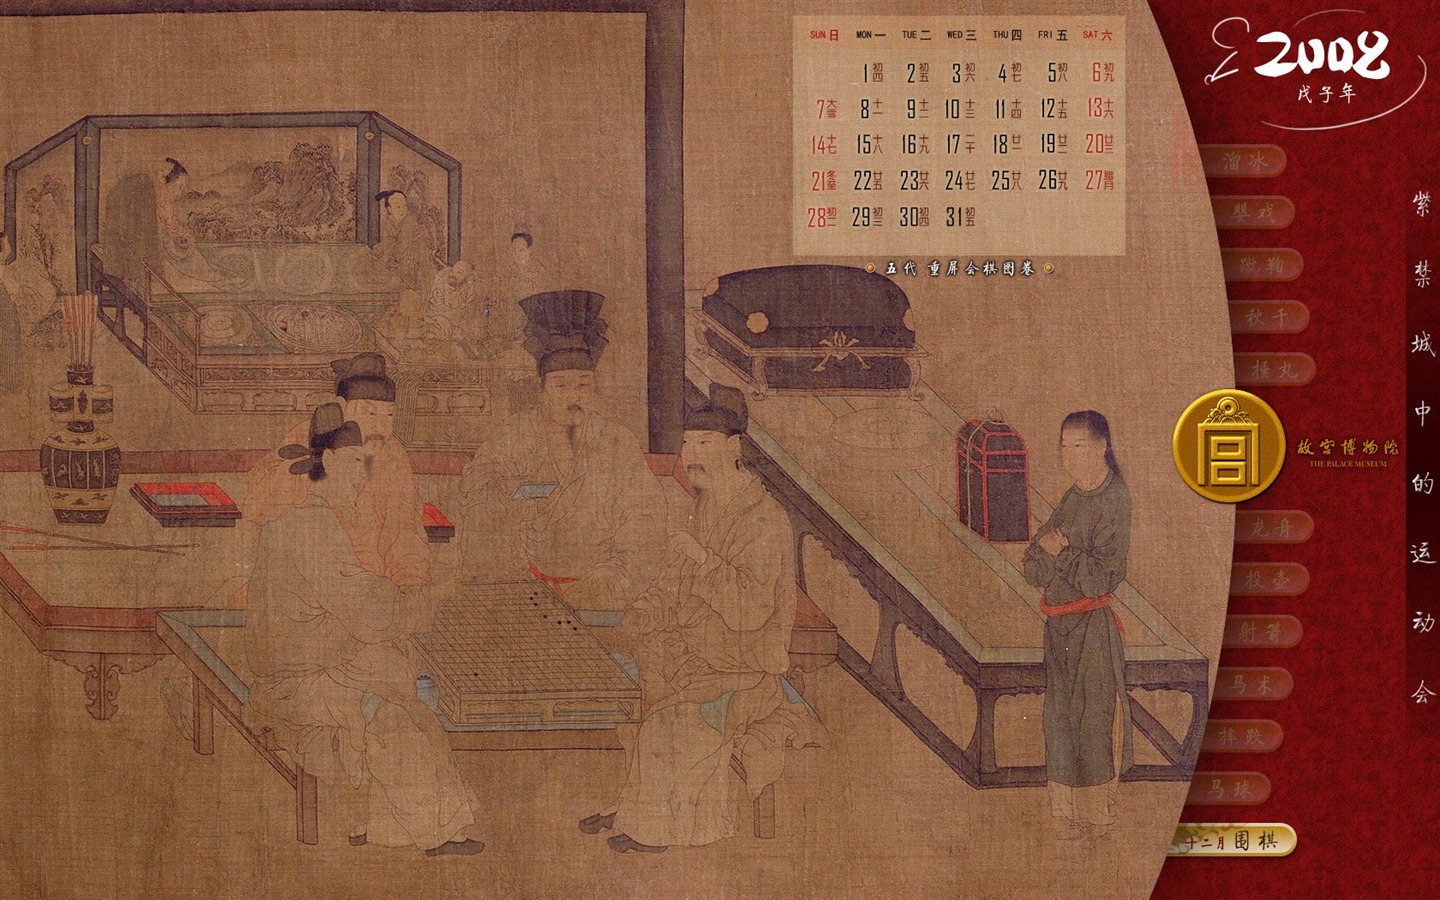 北京故宮博物院 文物展壁紙(二) #24 - 1440x900